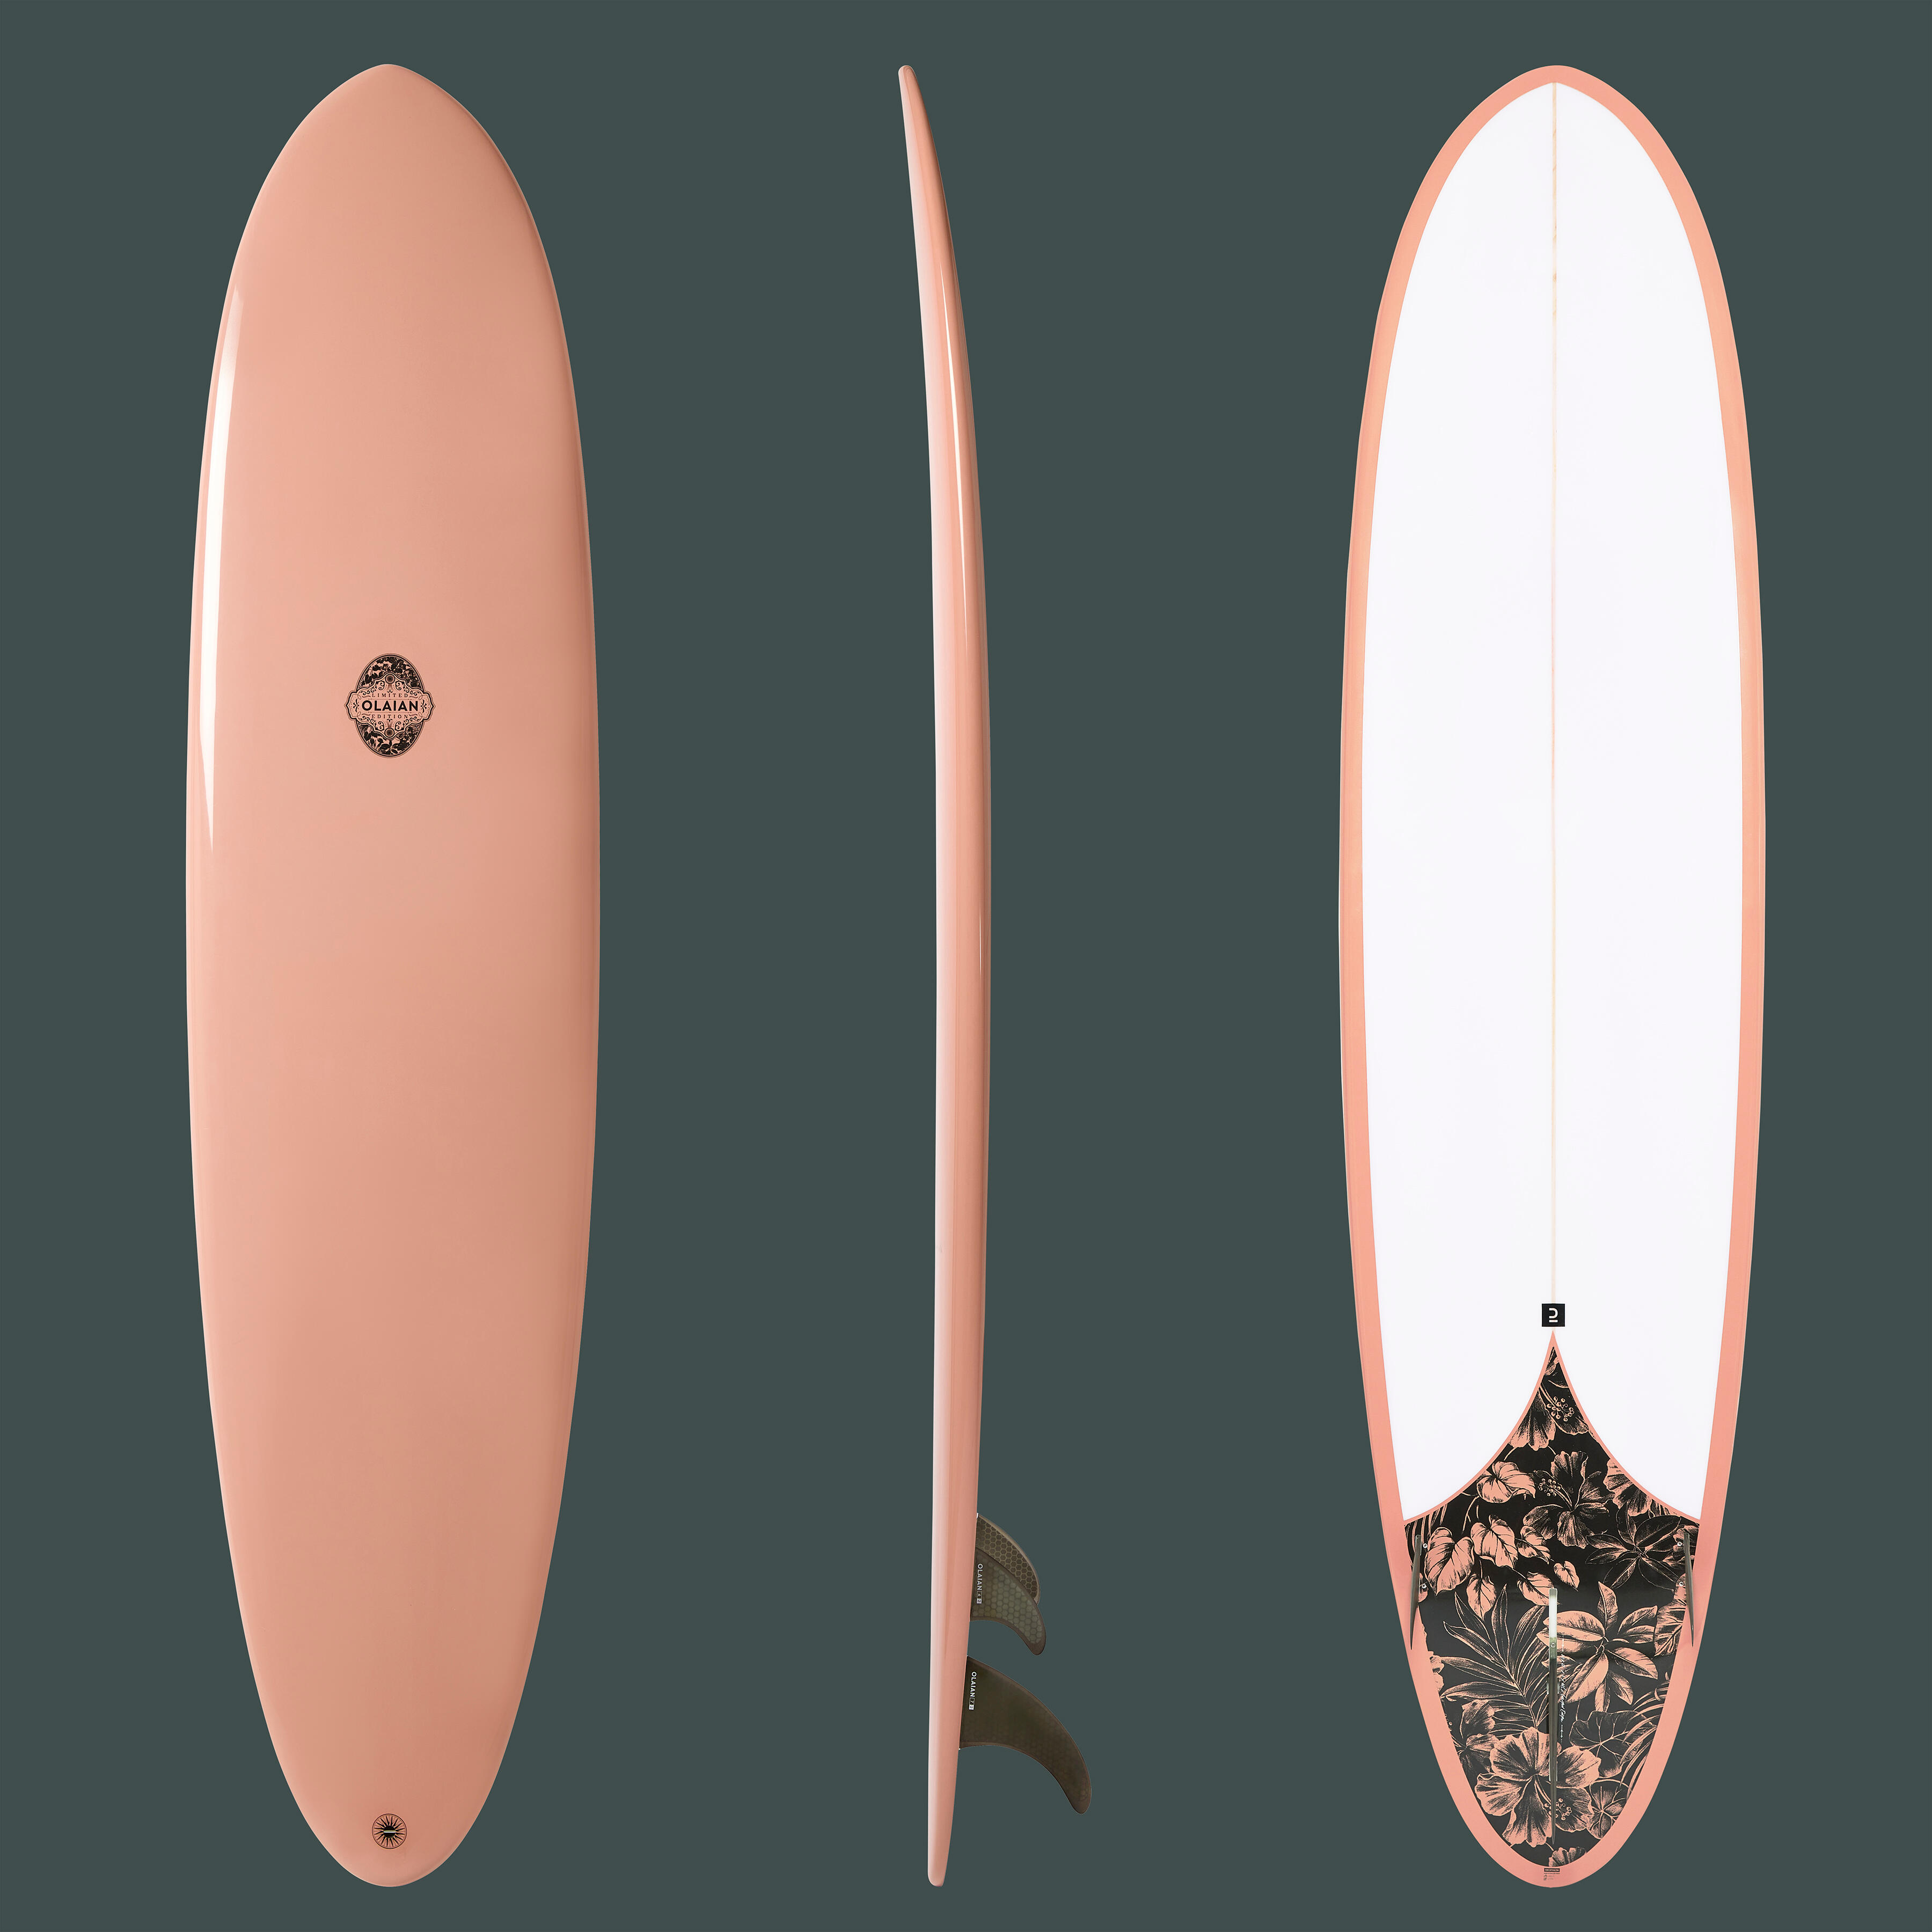 PLACĂ SURF 500 Hybride 8′ serie limitată. Vândută cu înotătoare. 500 imagine 2022